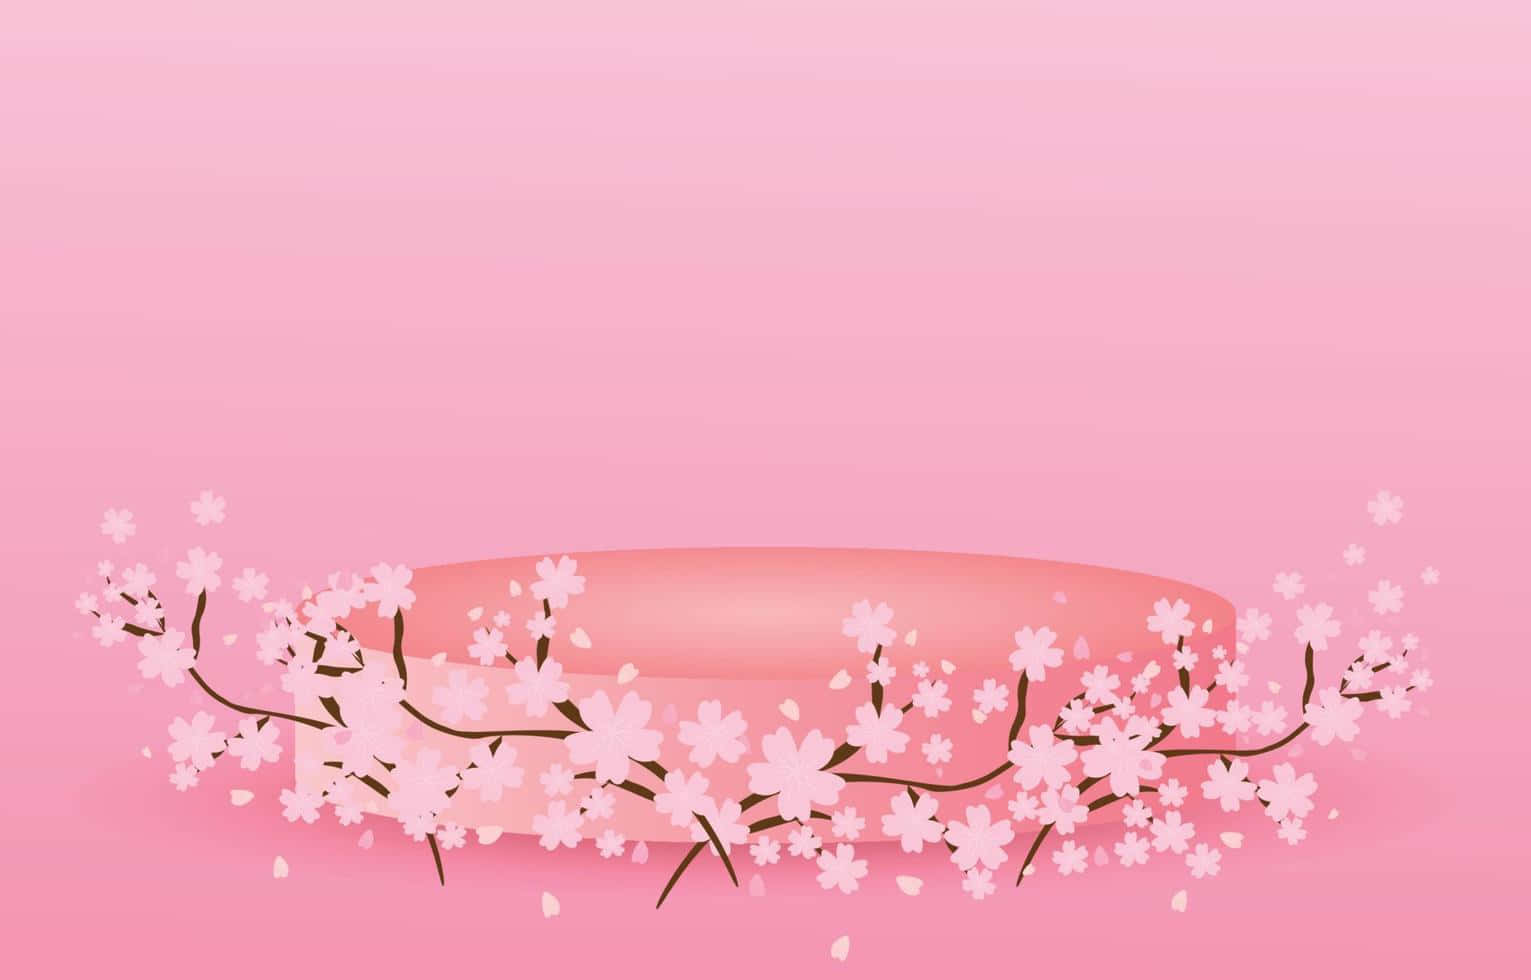 Taen Paus Och Njut Av Utsikten Över Den Japanska Sakura-säsongen Med En Datorskärmsbakgrund. Wallpaper